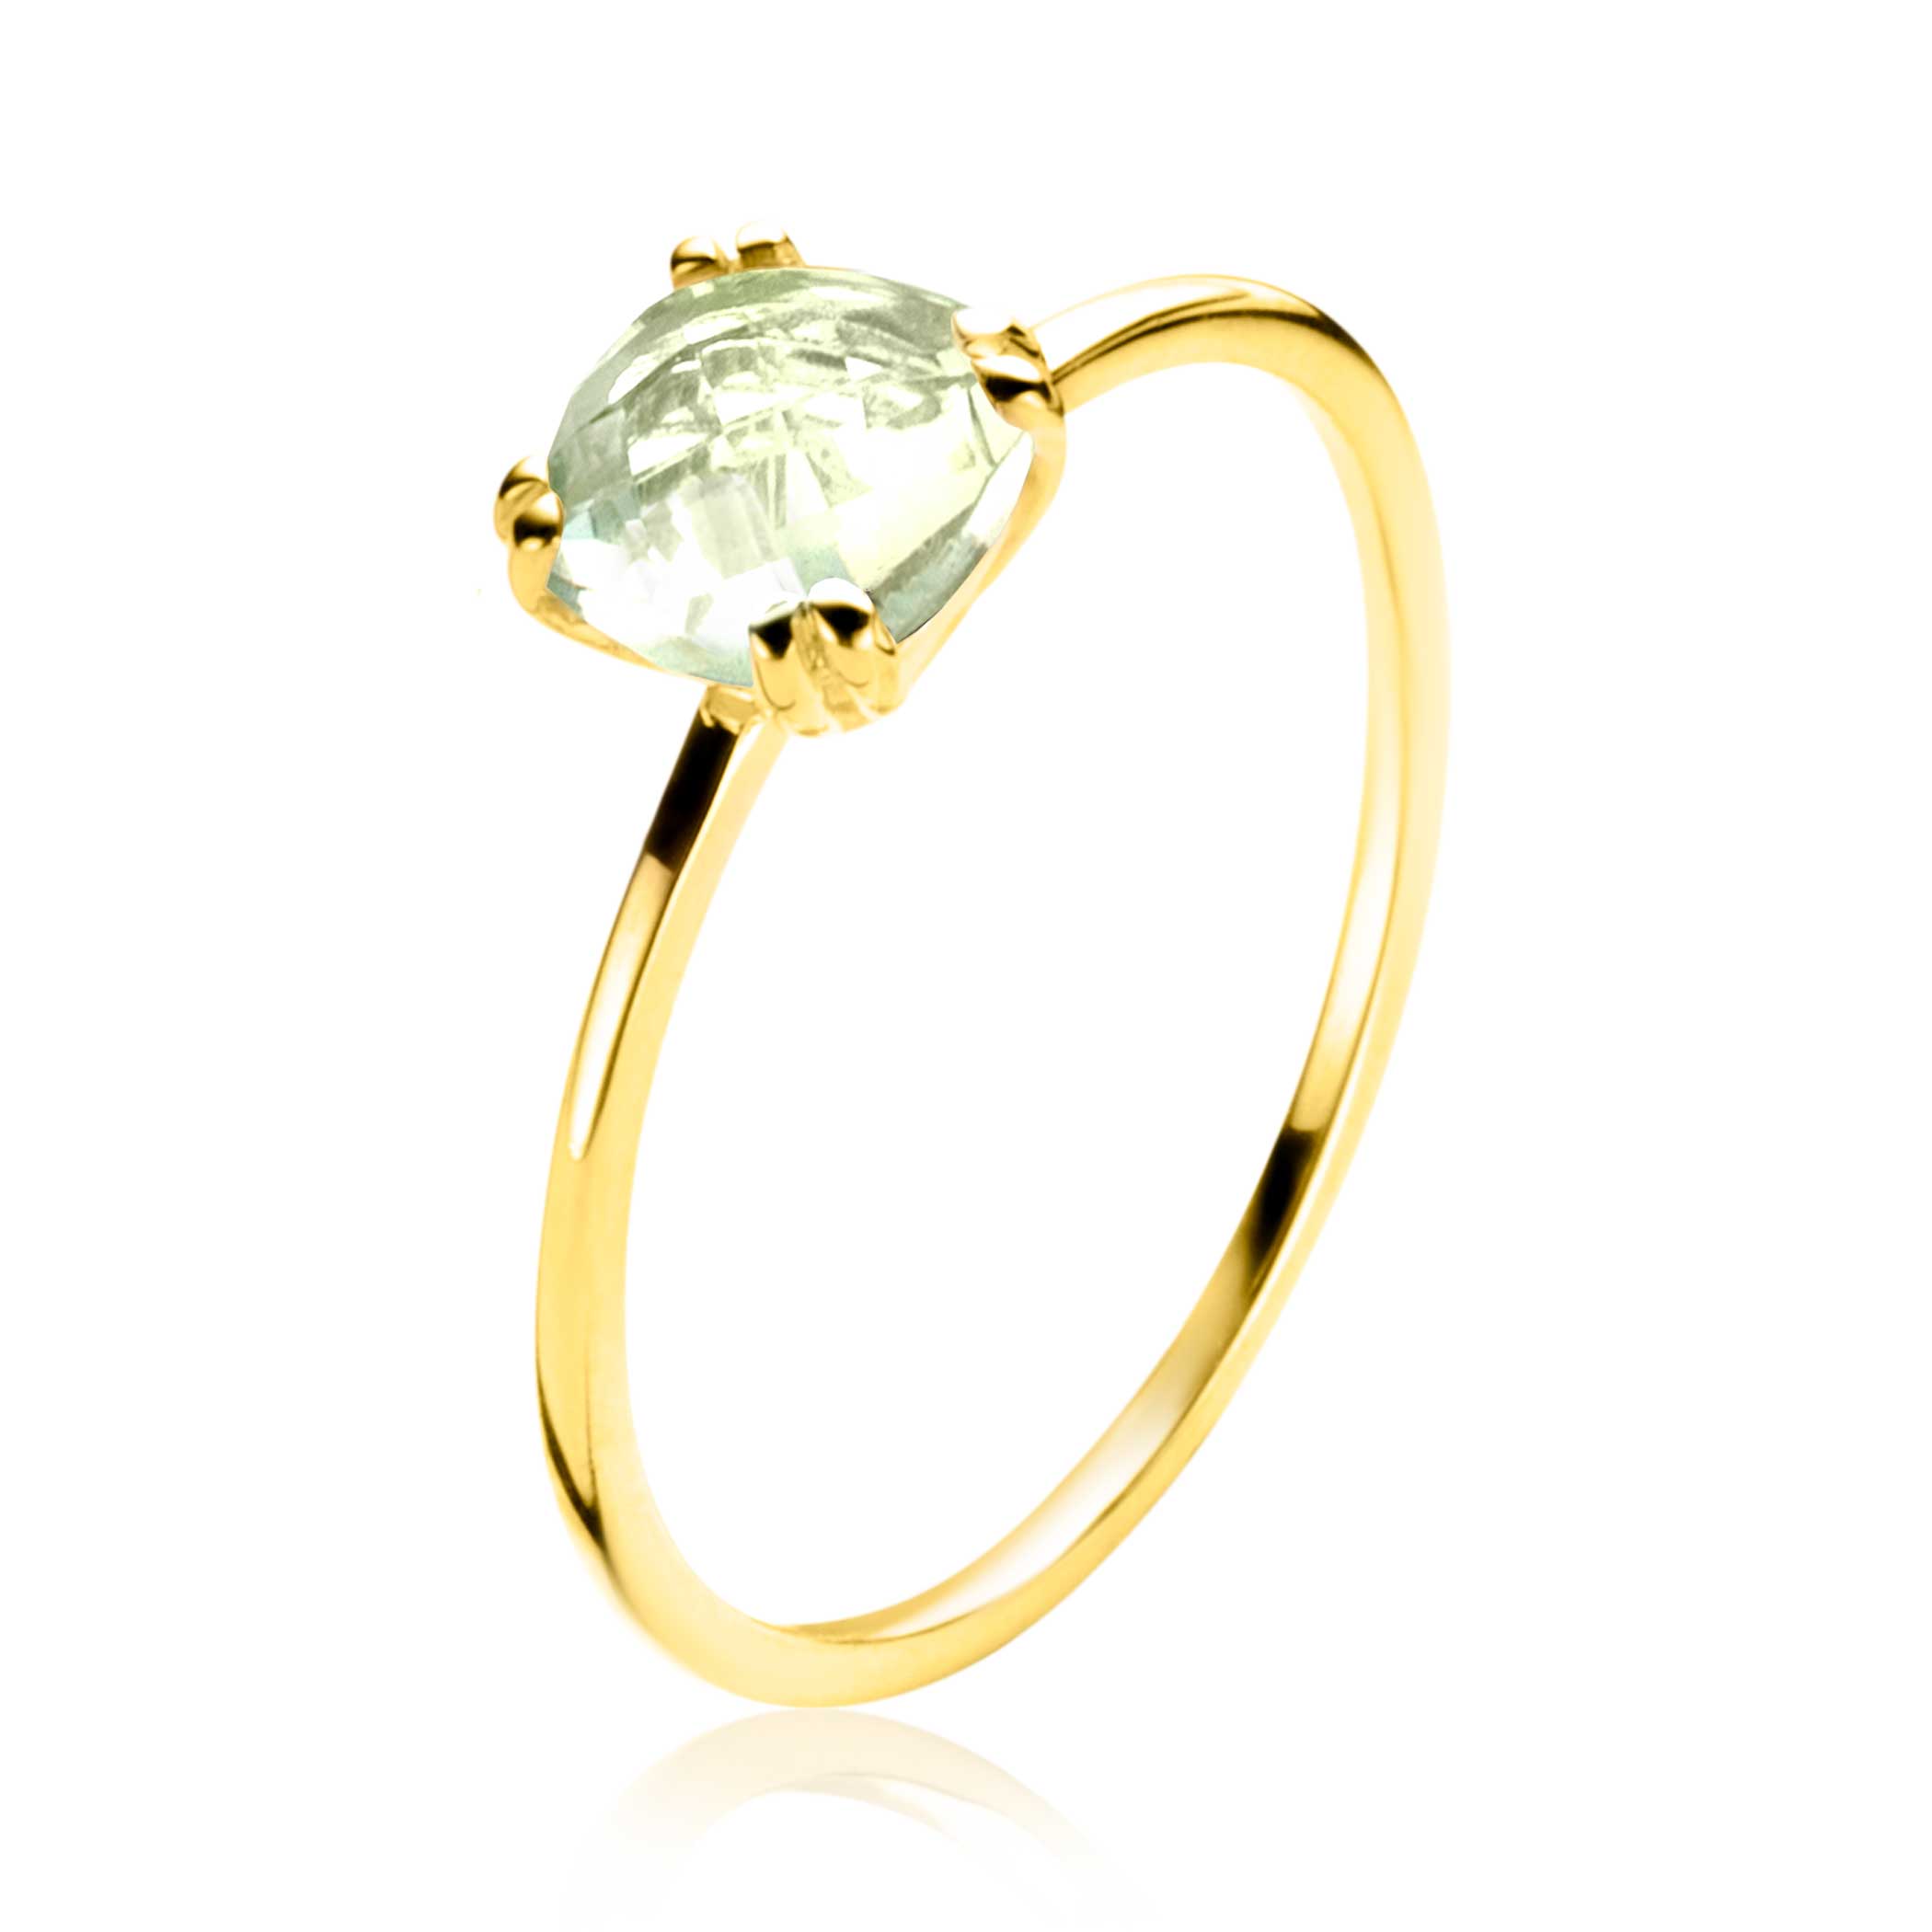 ZINZI 14 krt gouden ring waarbij een lichtgroene amethist (6mm) een vierkante chatonzetting ZGR376